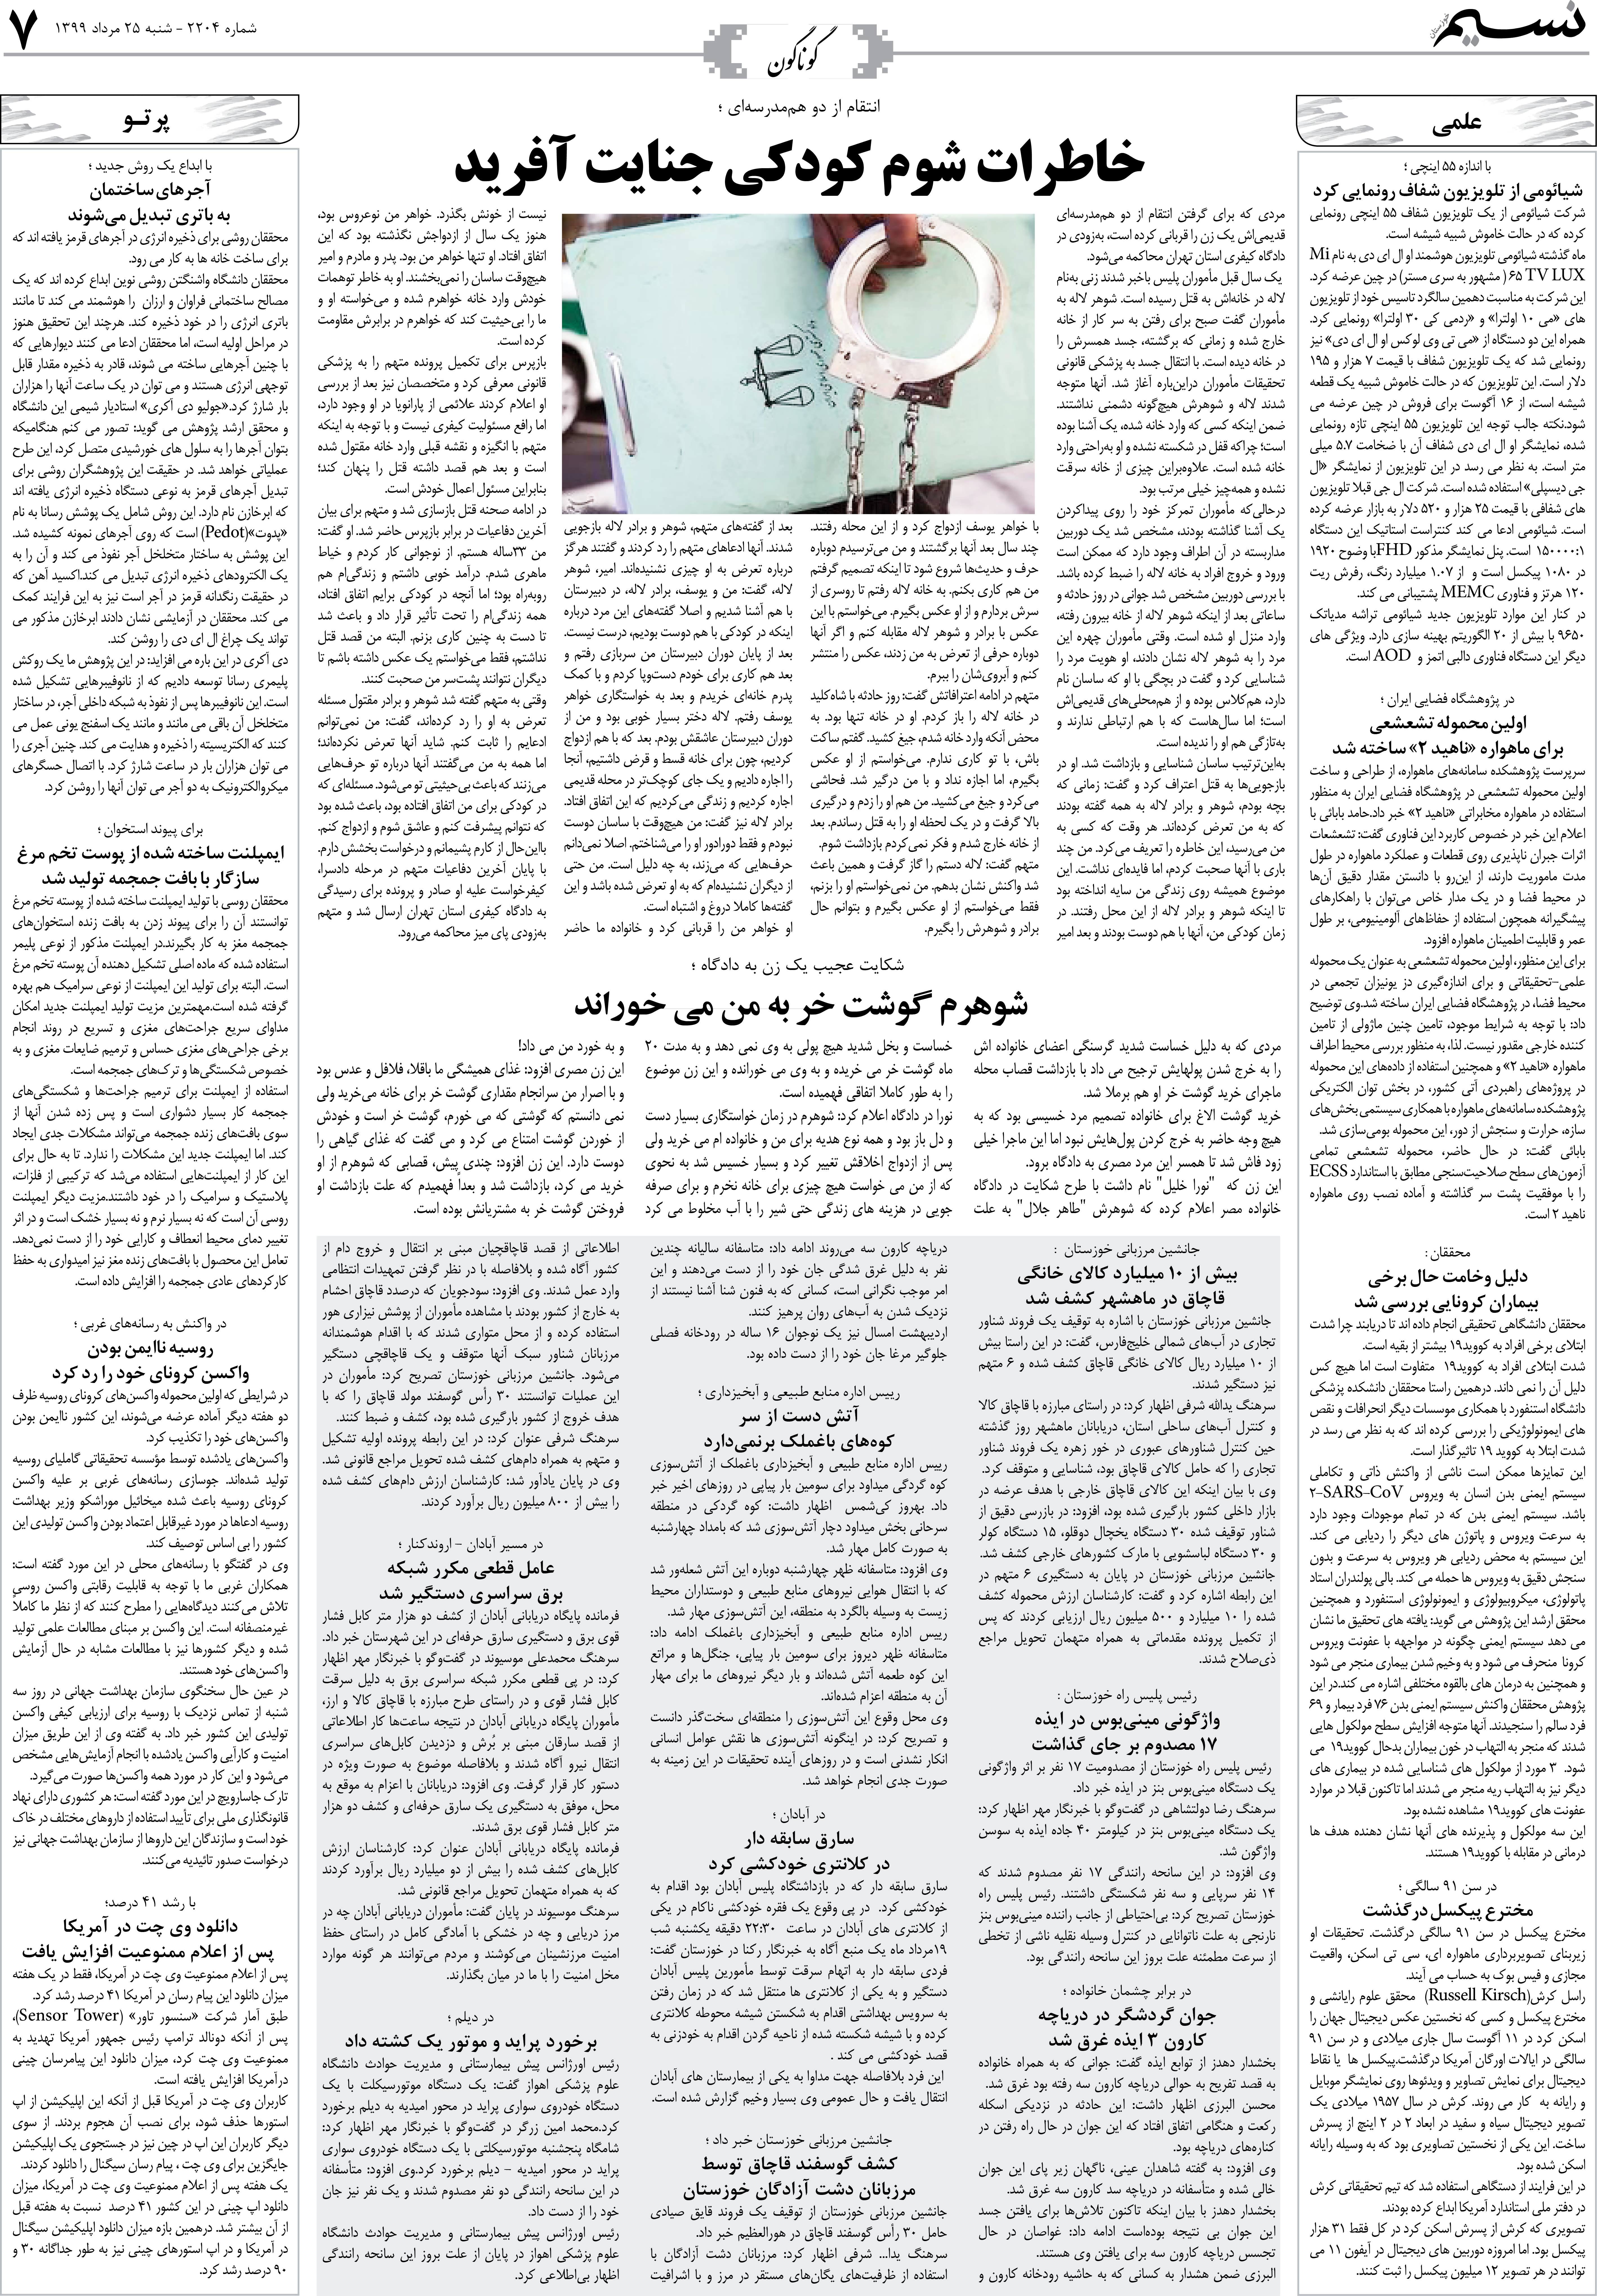 صفحه گوناگون روزنامه نسیم شماره 2204